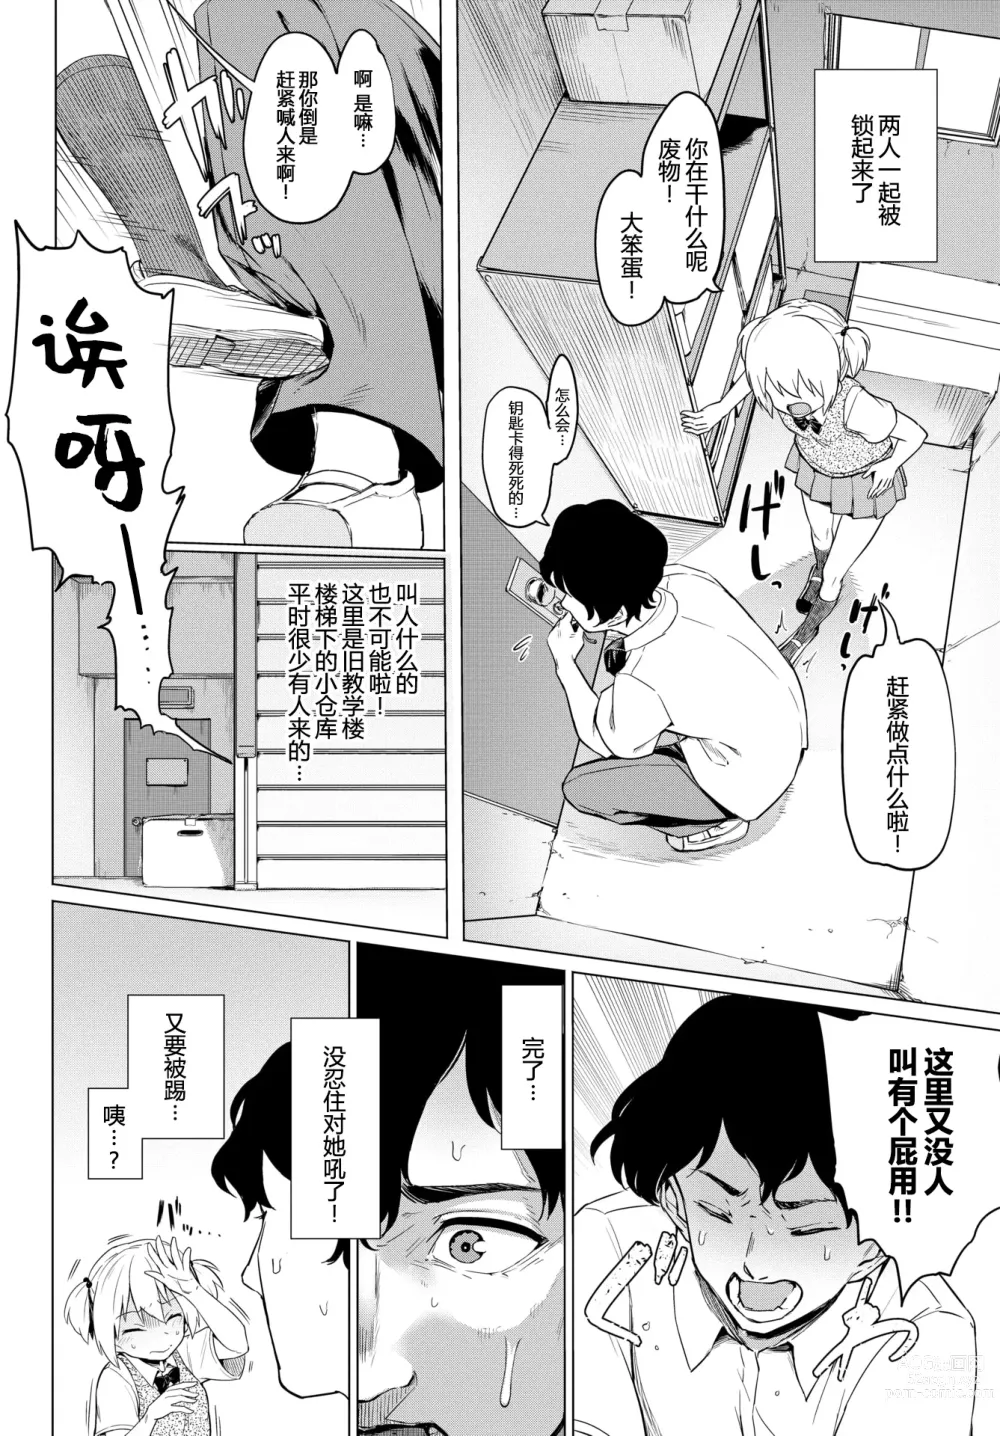 Page 2 of manga Boukun-kei Joshi